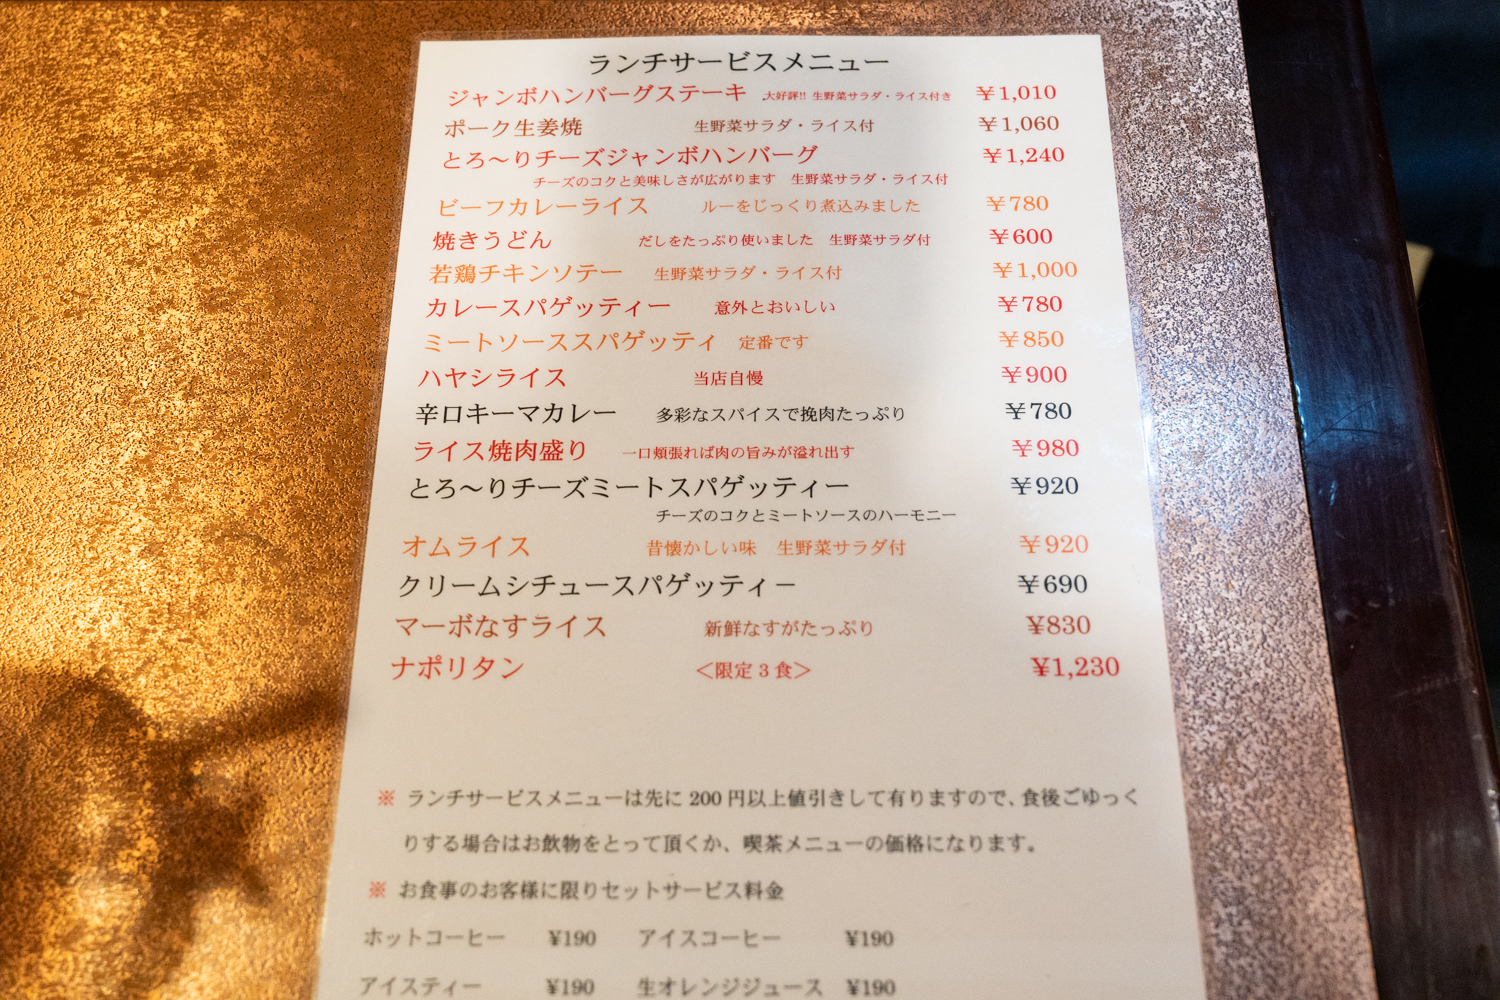 通常の価格より200円以上お得になっているランチのメニュー。